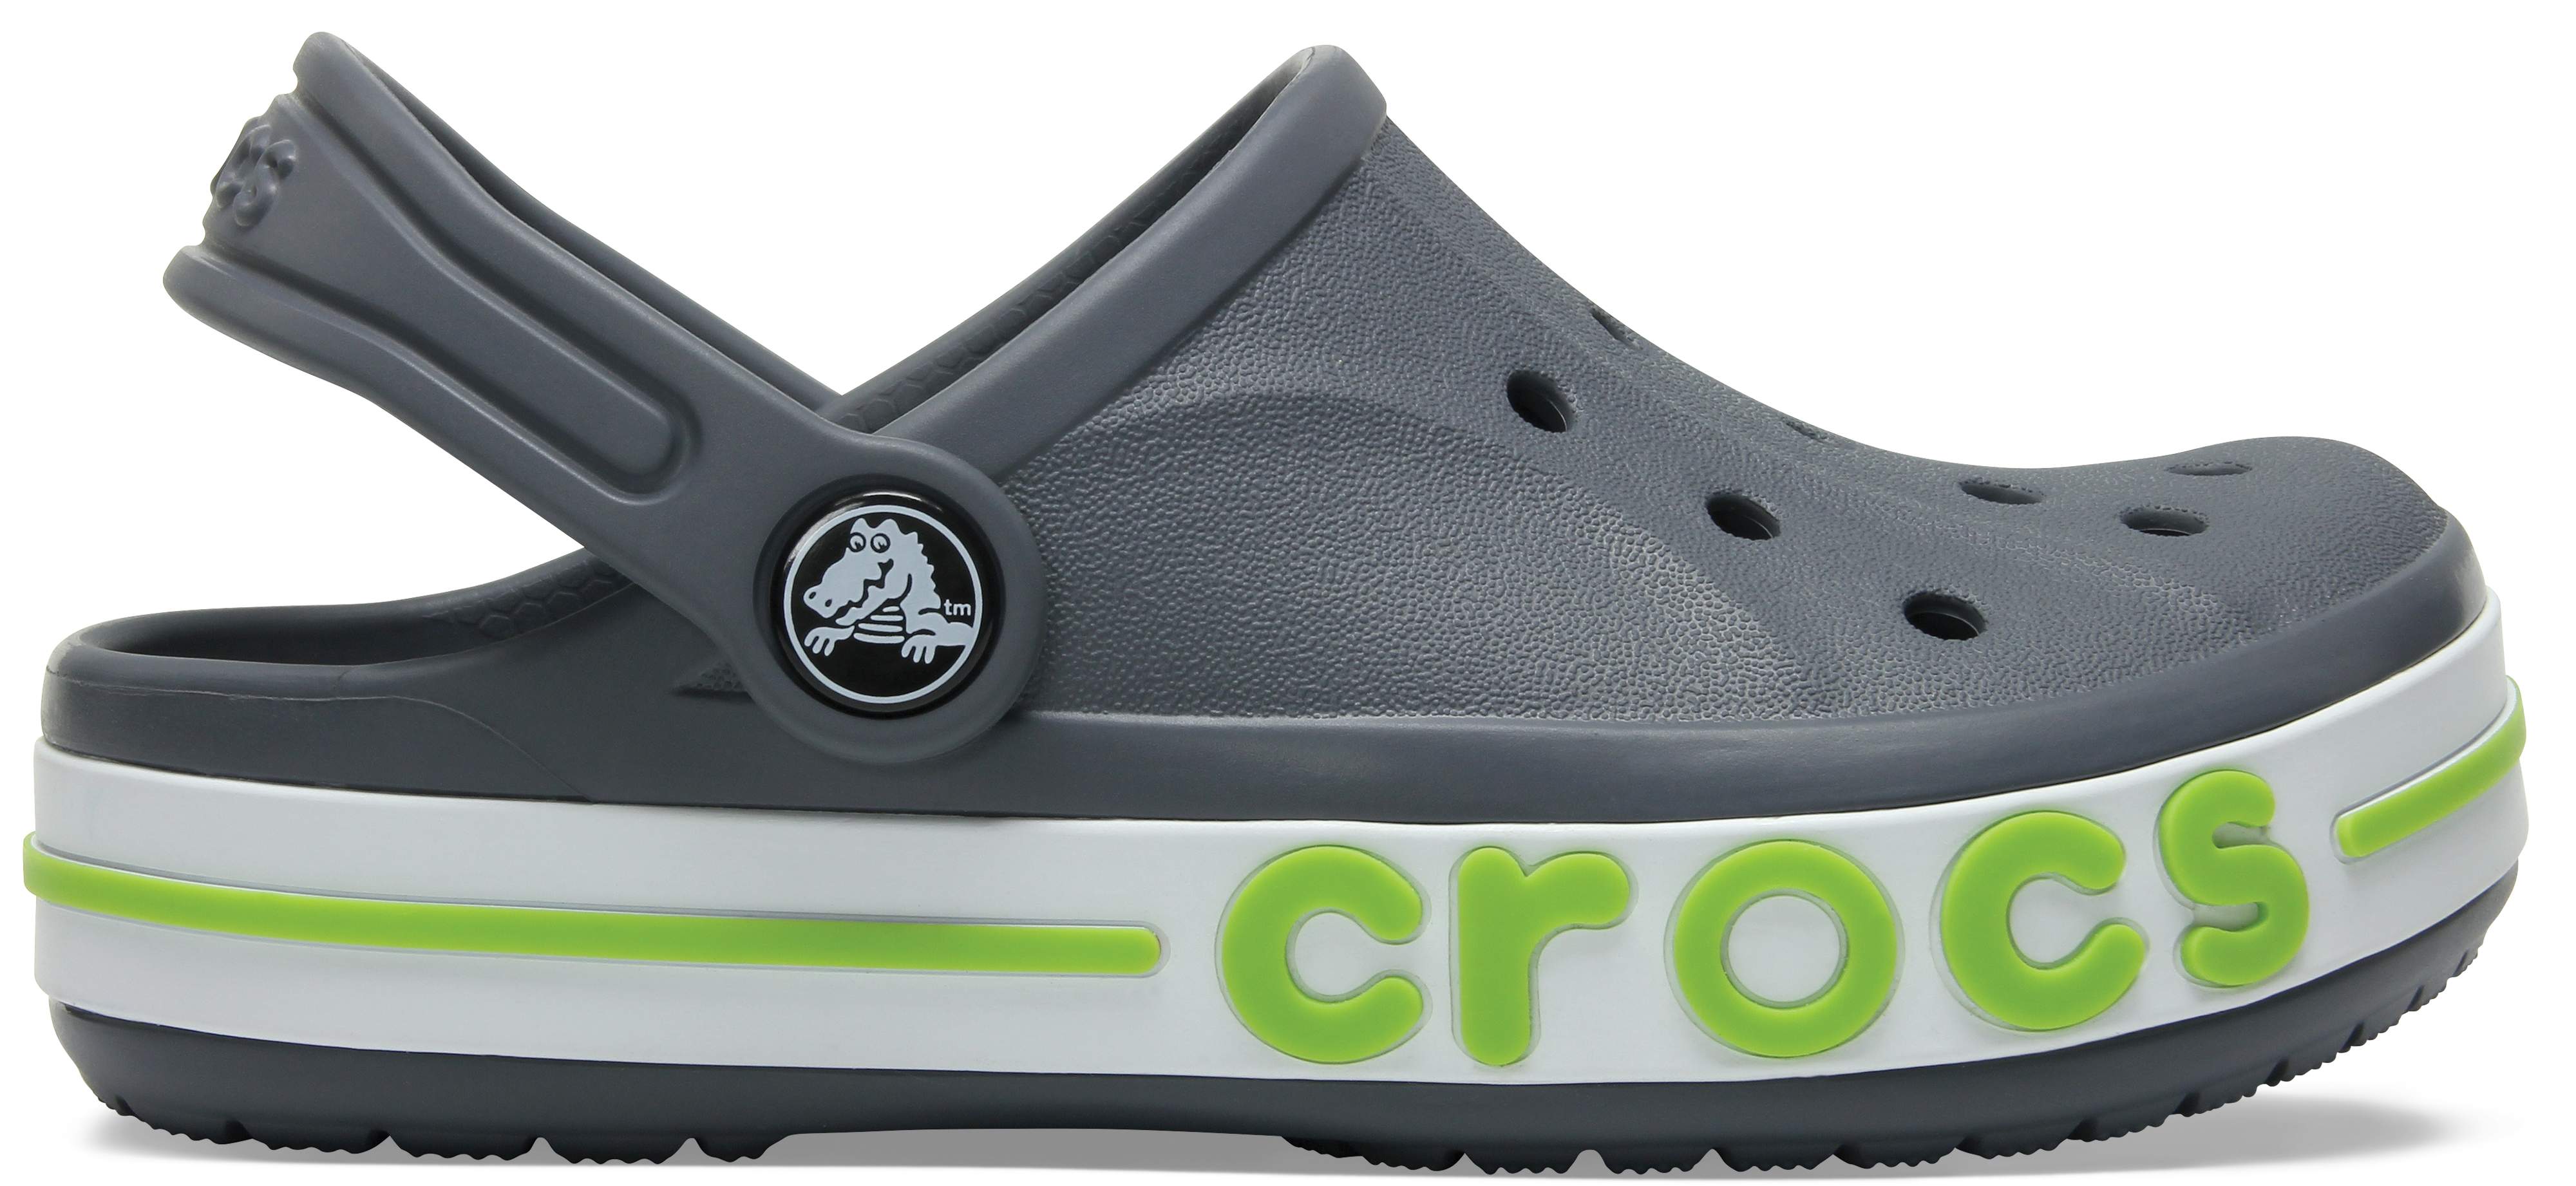 white crocs j3